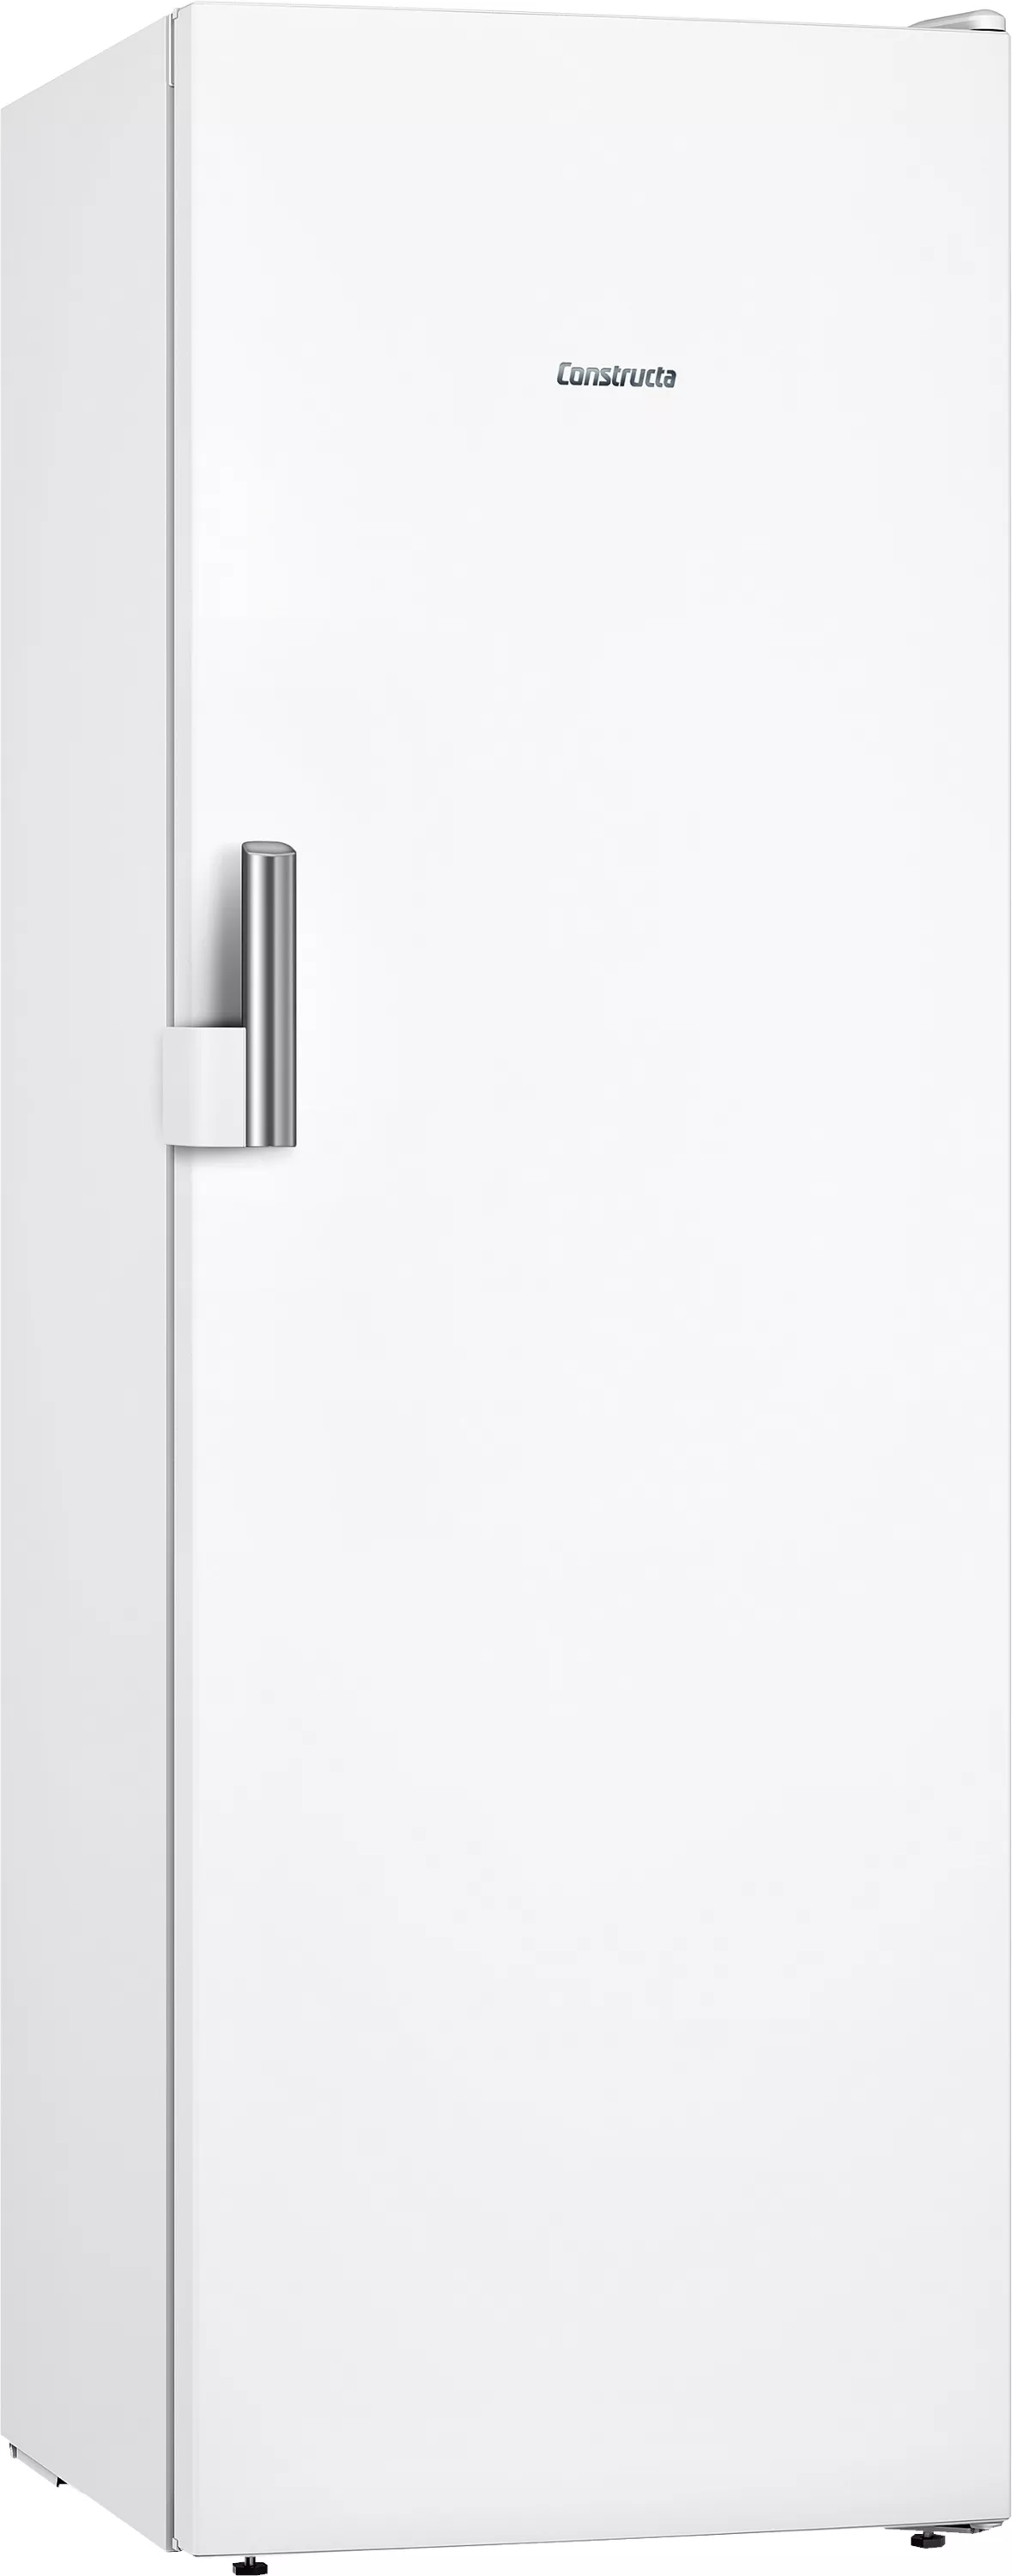 Constructa Freistehender Tiefkühlschrank, 176 x 60 cm, Weiß, CE733EWE0